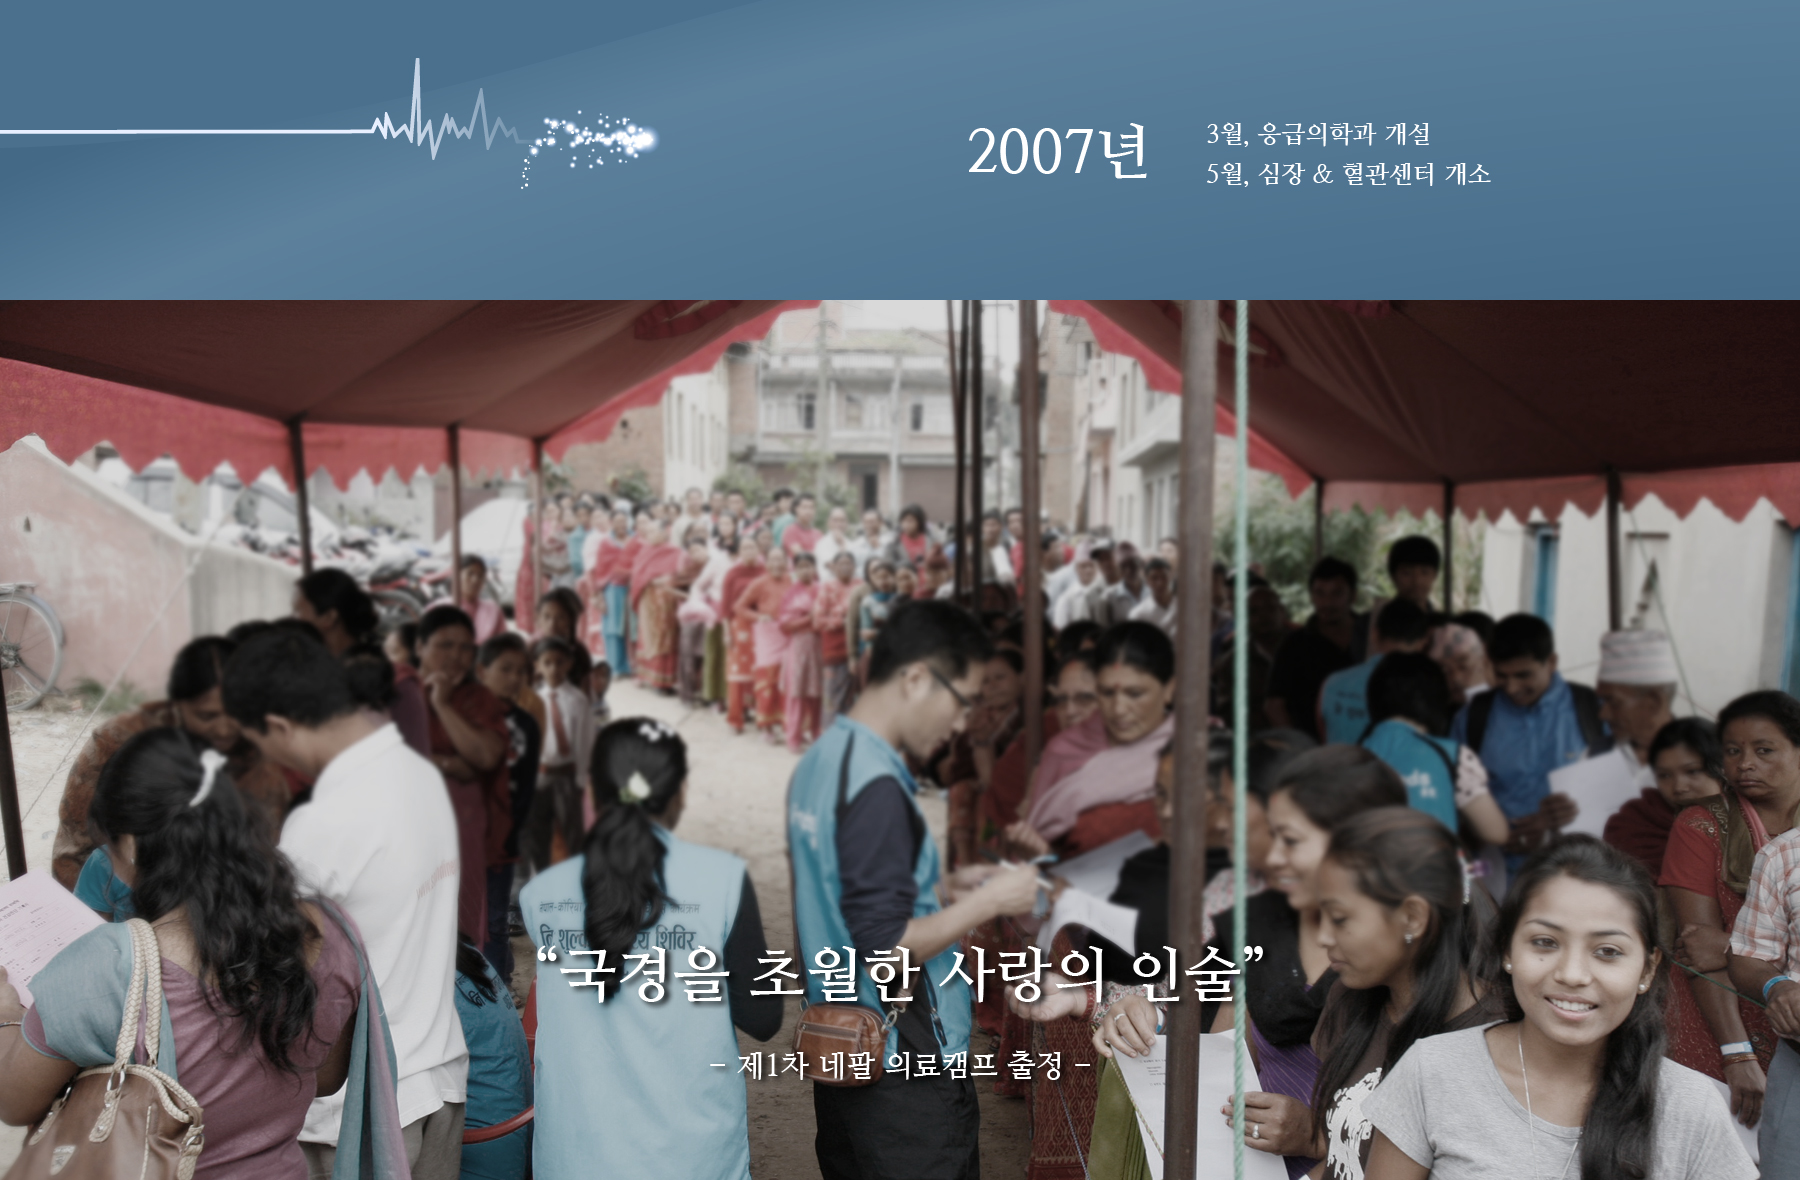 2007년 3월, 응급의학과 개설 5월, 심장 & 혈관센터 개소   “국경을 초월한 사랑의 인술” - 제1차 네팔 의료캠프 출정 -